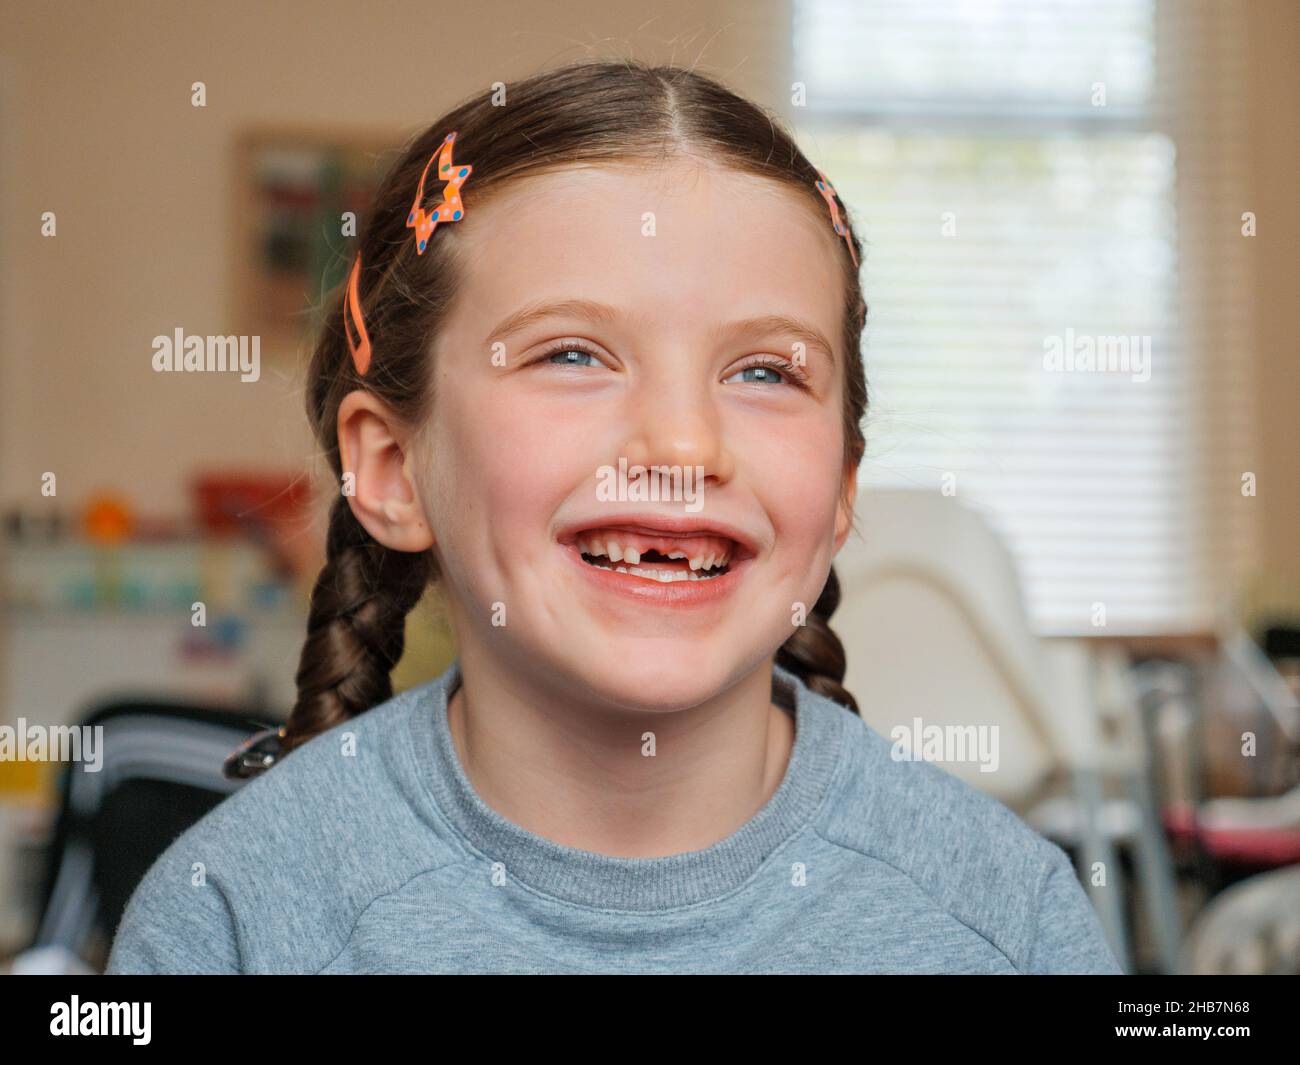 Porträt eines glücklichen lächelnden sieben Jahre alten Mädchens, das ihre Vorderzähne verloren hat, die herausgefallen sind Stockfoto